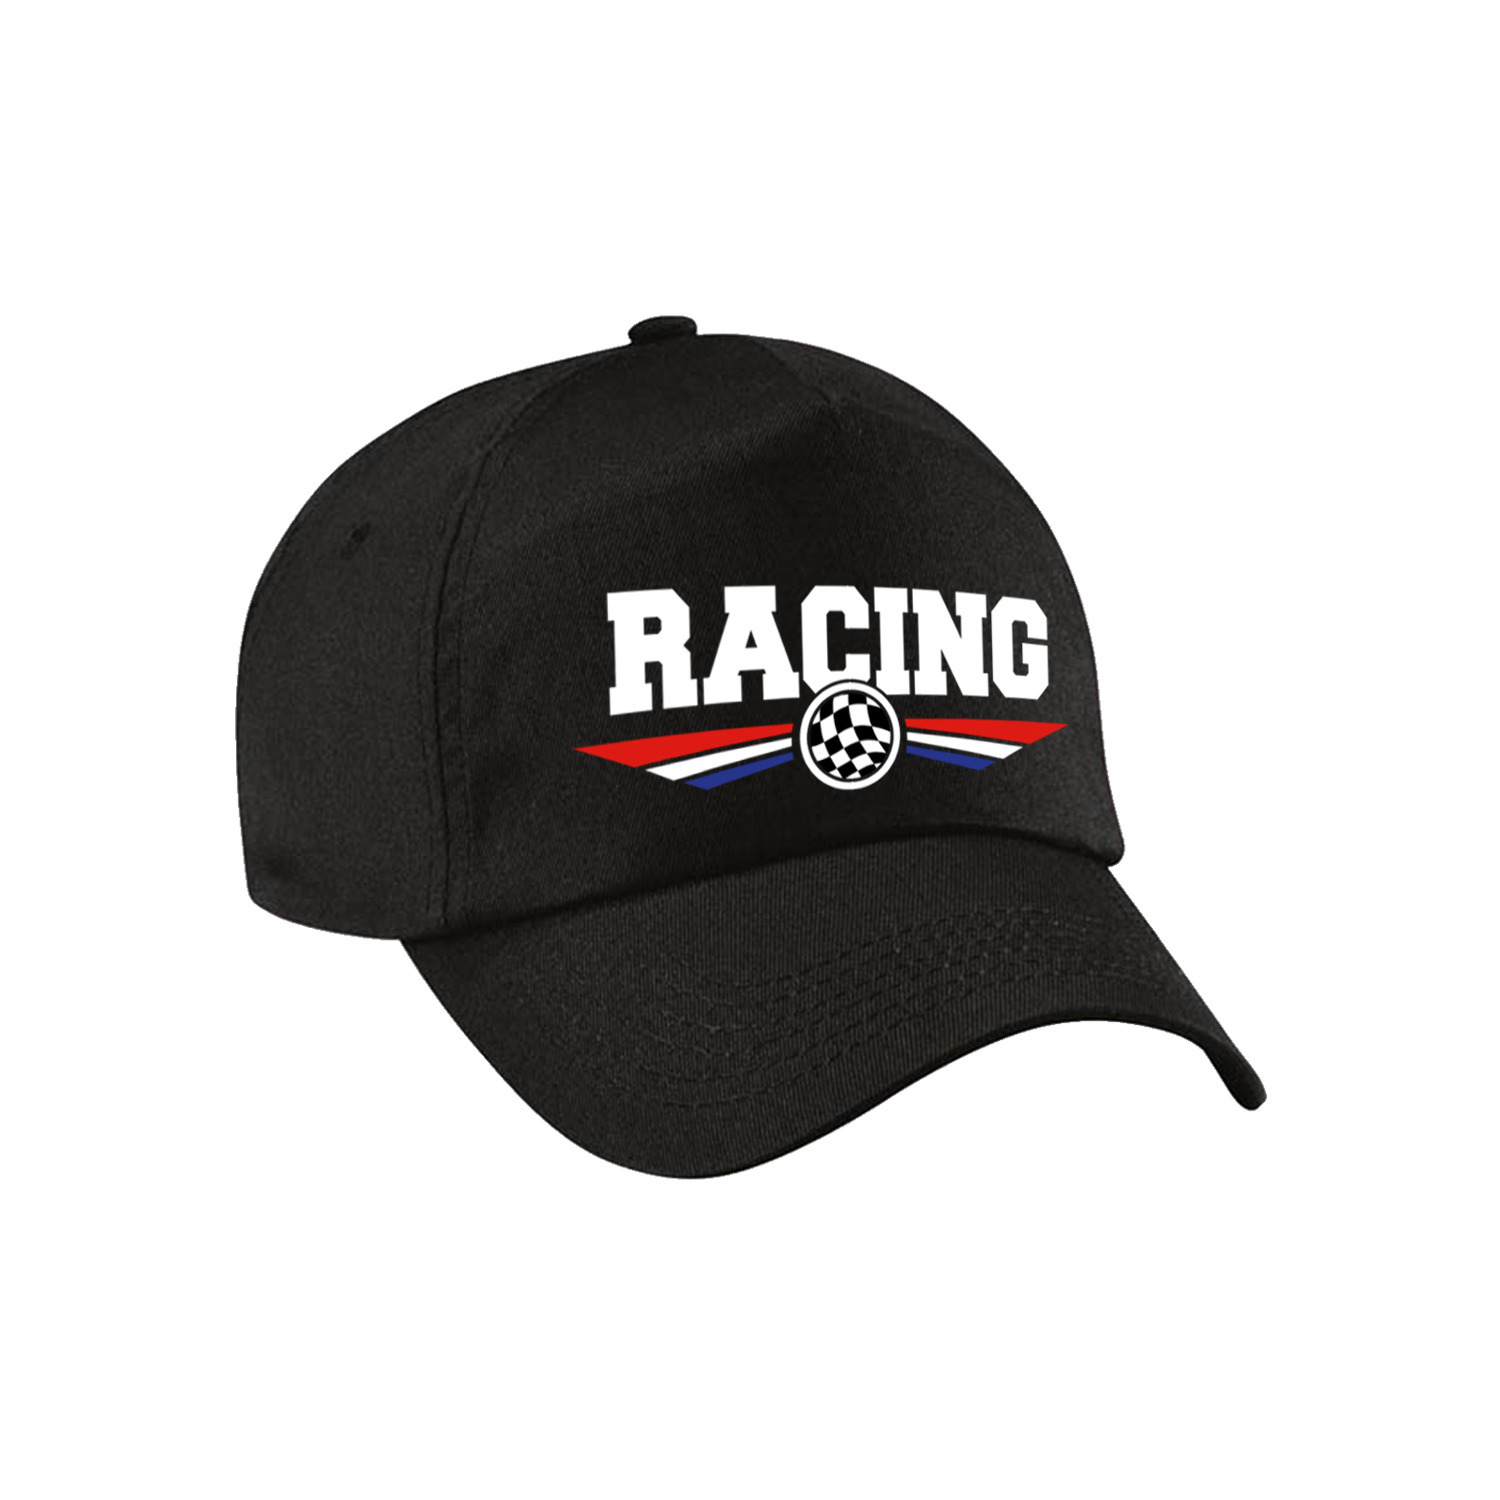 Racing coureur supporter pet / baseball cap met Nederlandse vlag zwart voor volwassenen